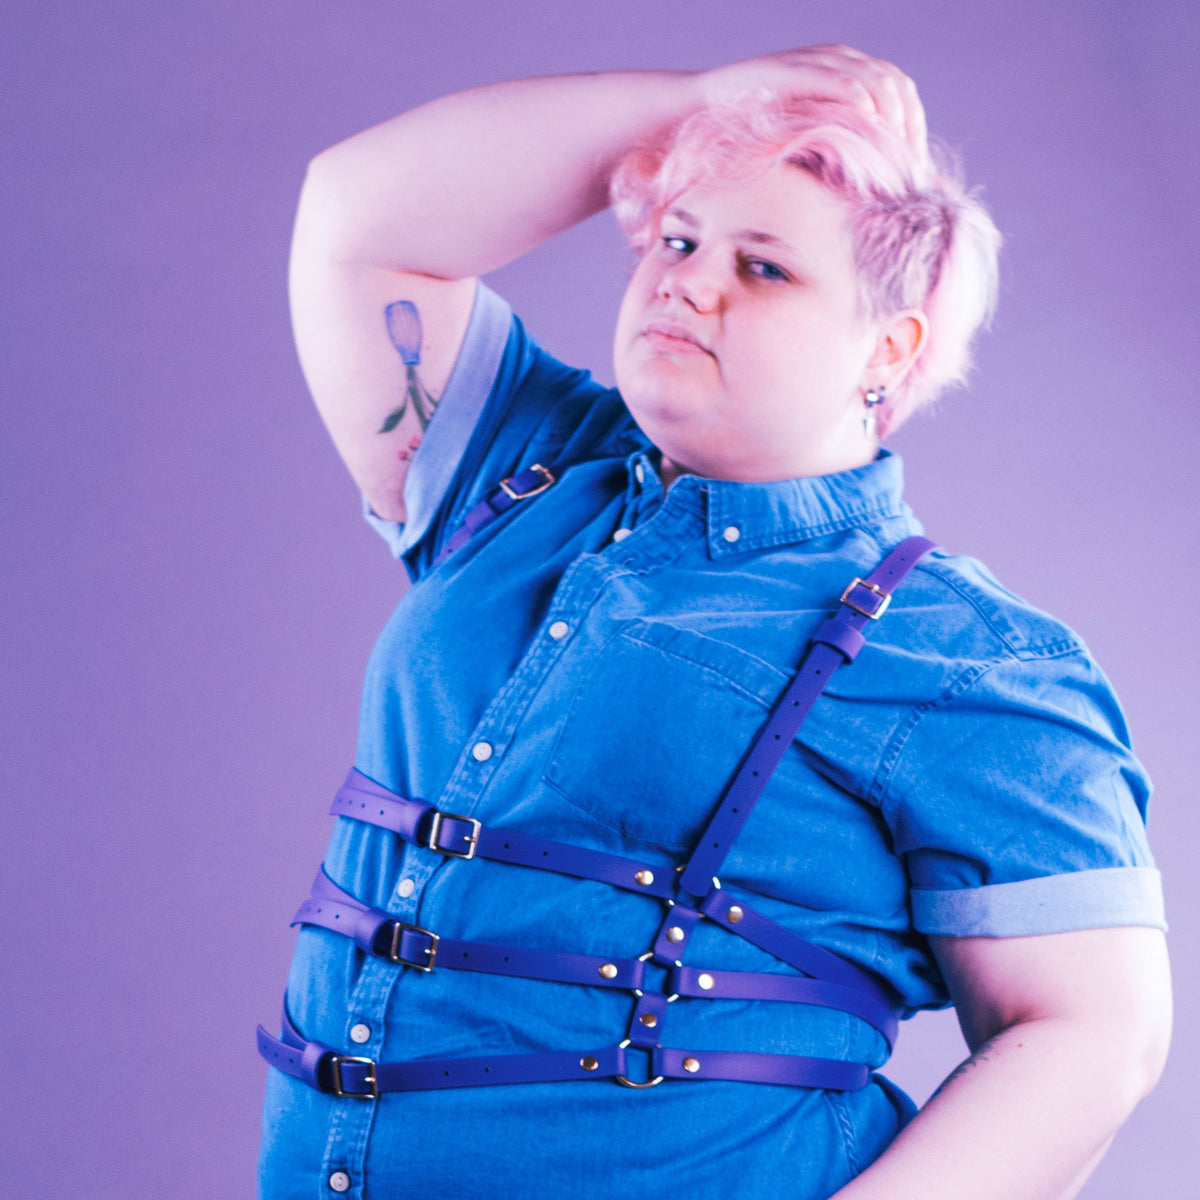 Woman styling a vegan waist harness over a shirt.